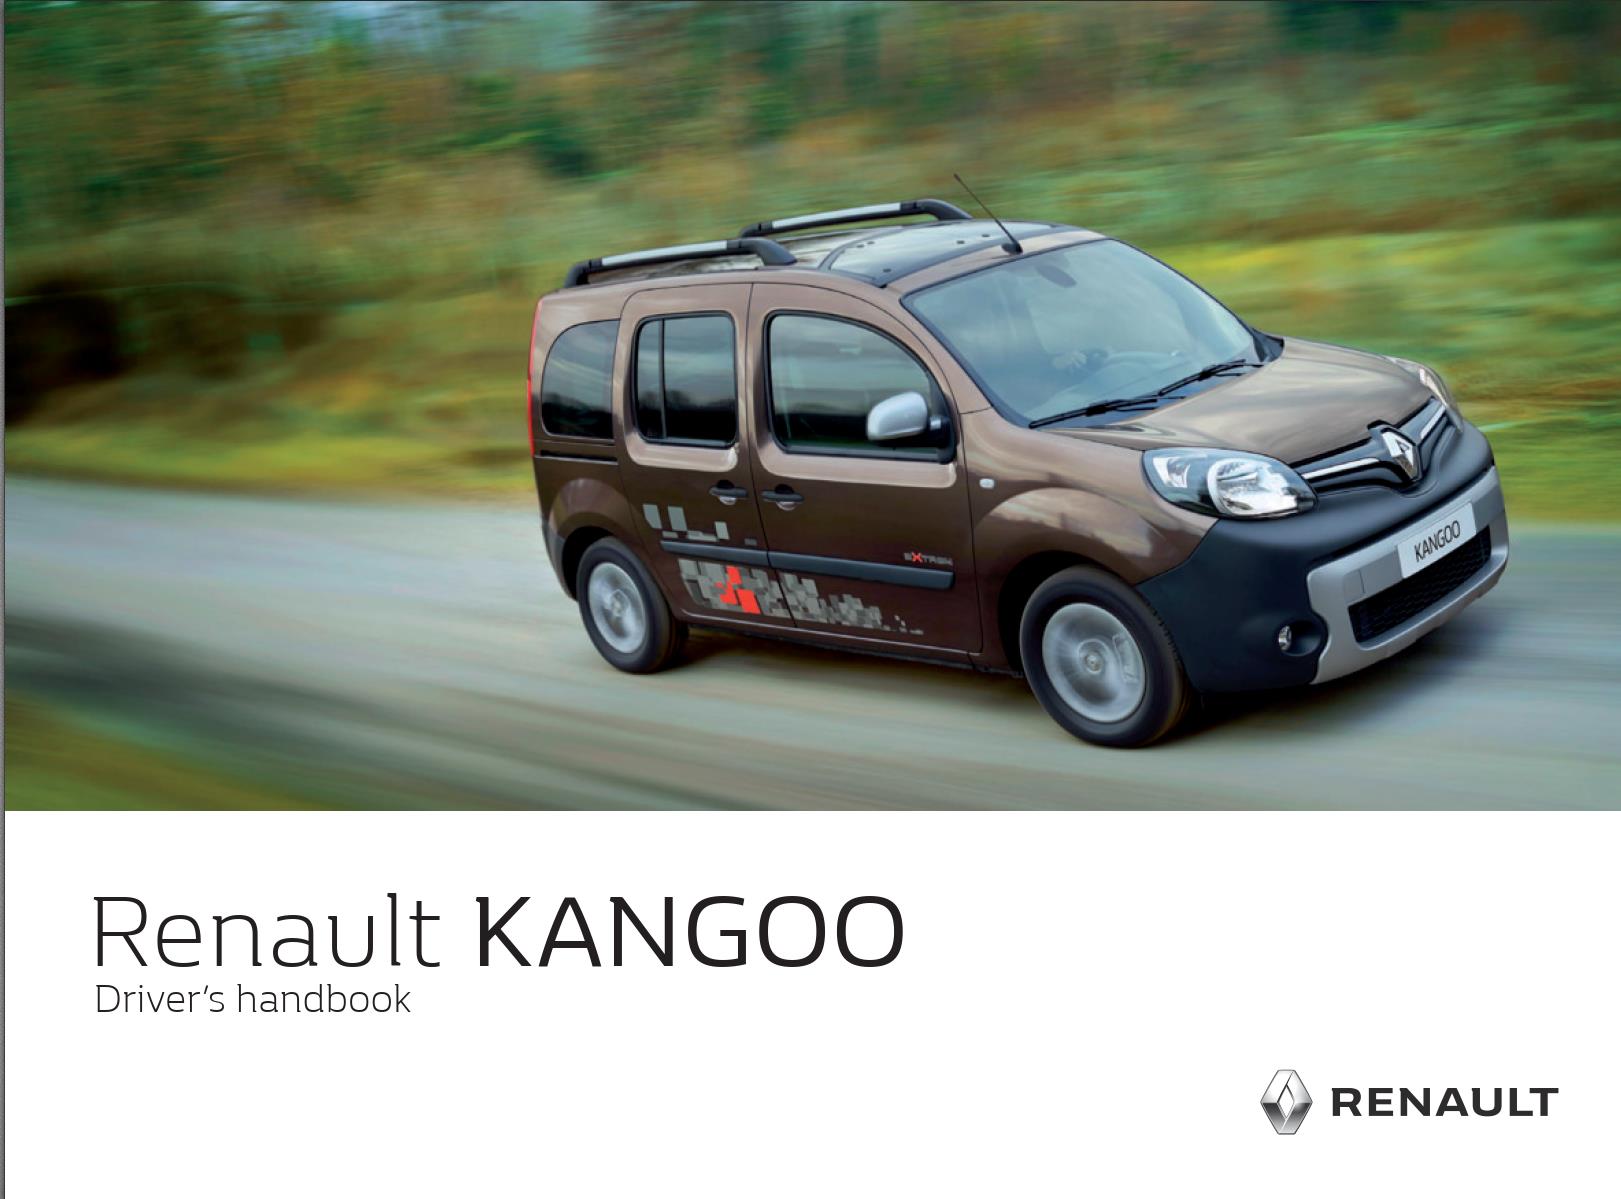 Renault Kangoo 2018 Owner's Manual PDF Download